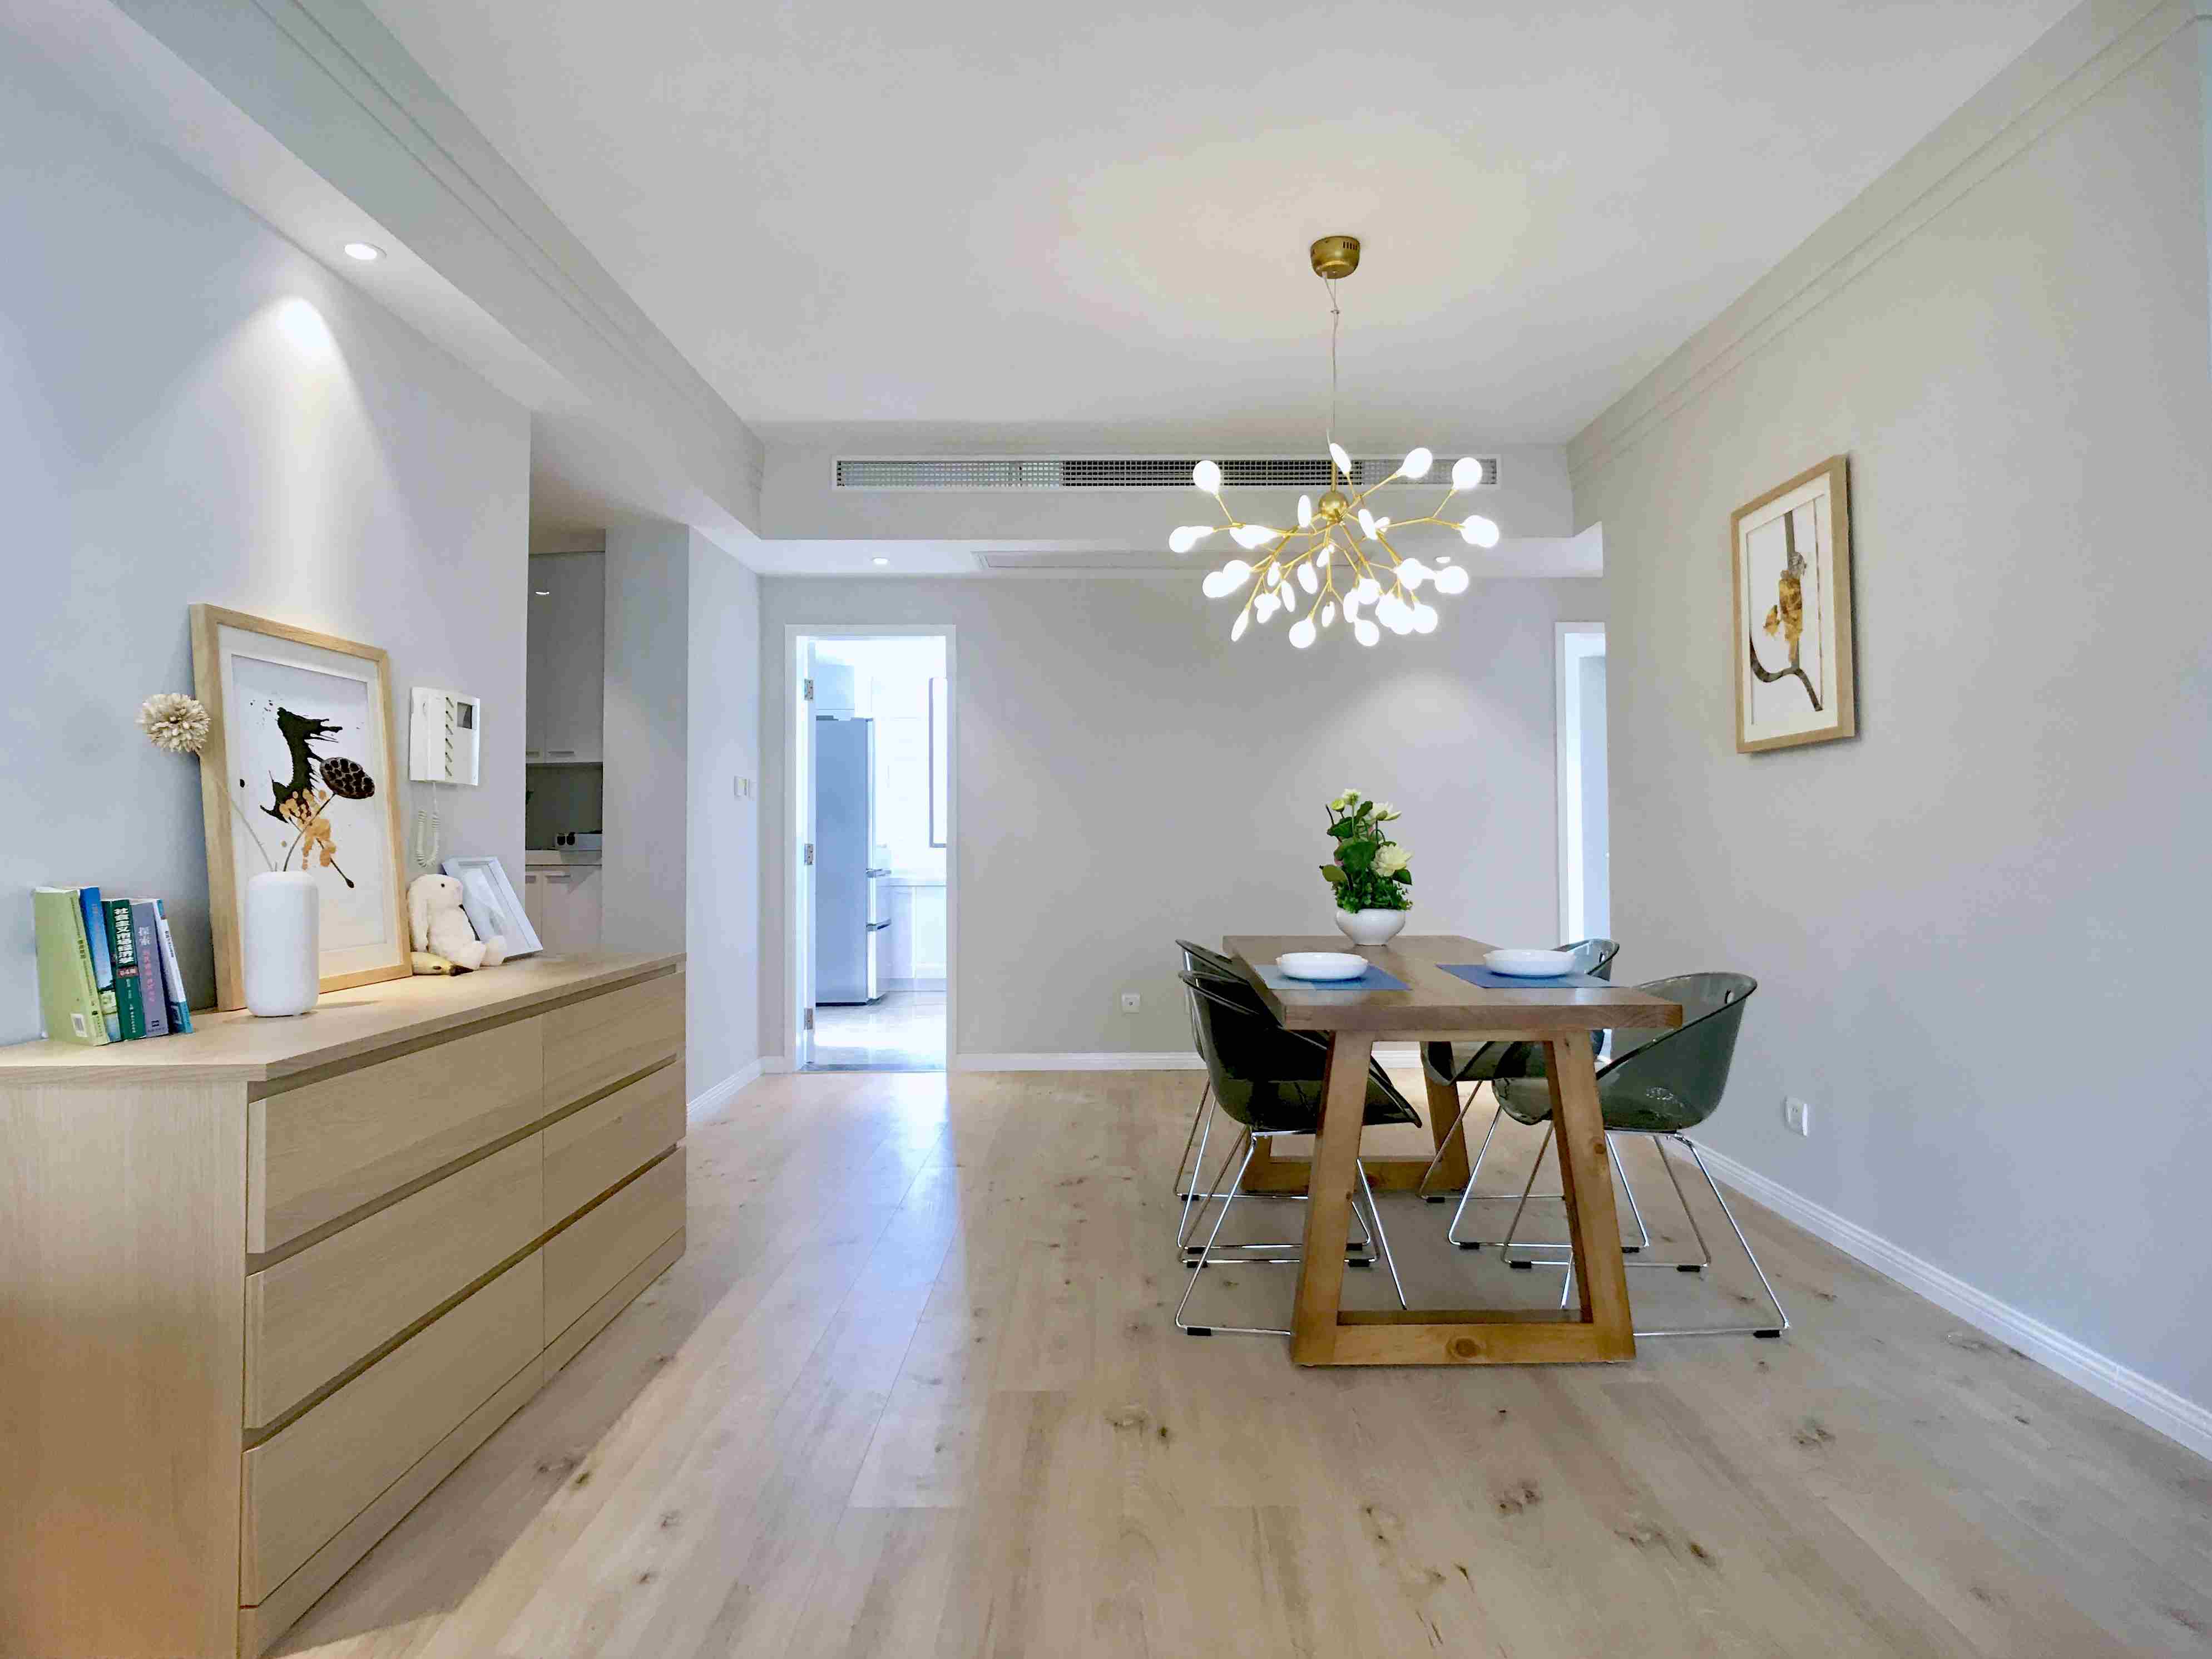  New 3BR Apartment w/ Floor-Heating in Laoximen